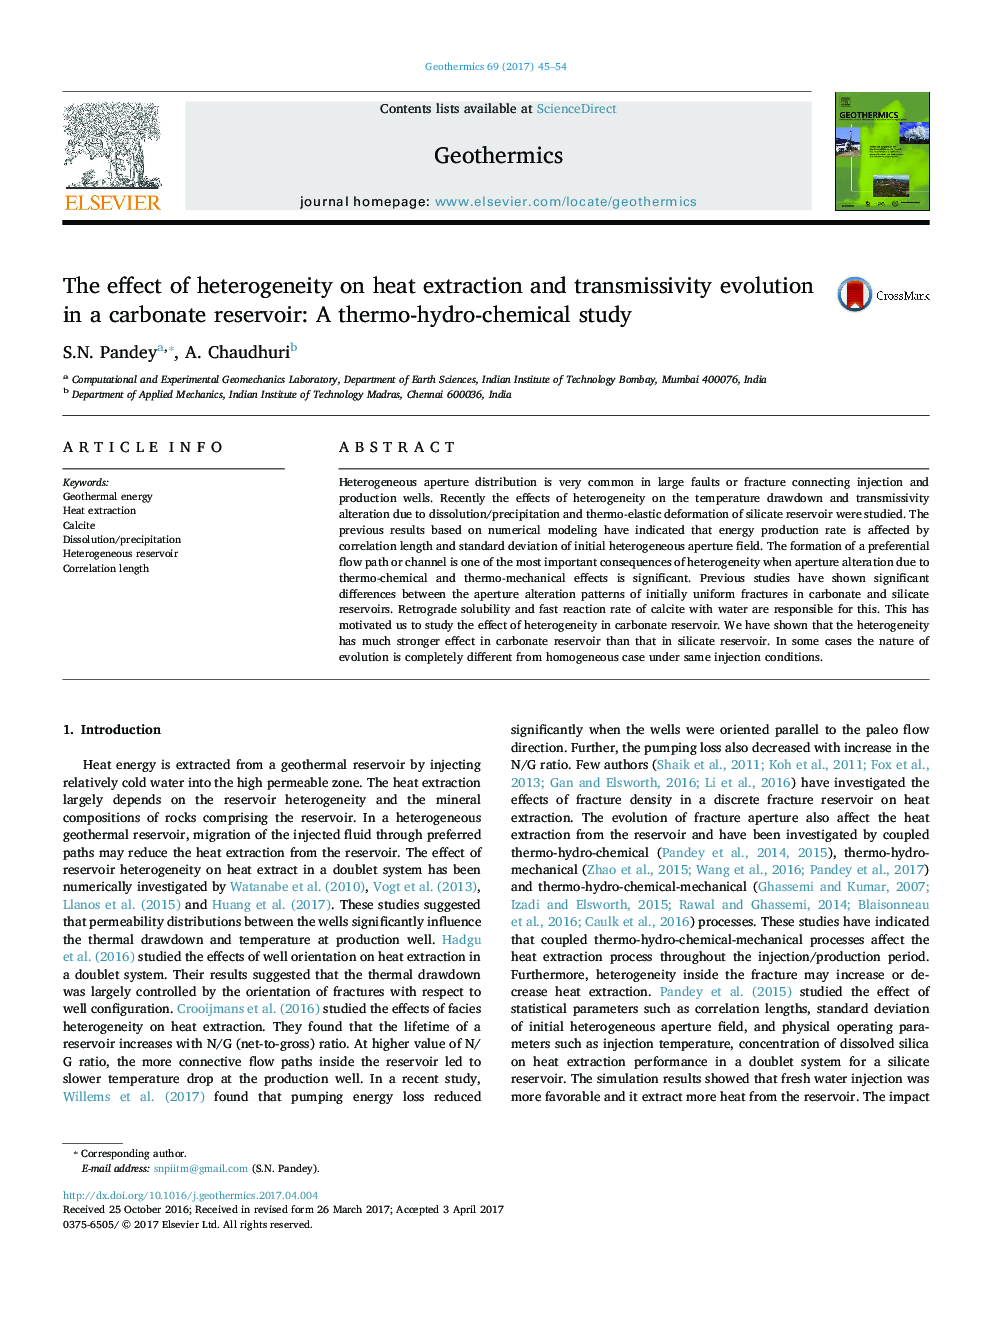 اثر ناهمگنی در استخراج گرما و تکامل انتقال در یک مخزن کربناته: مطالعات هیدروکربنی 